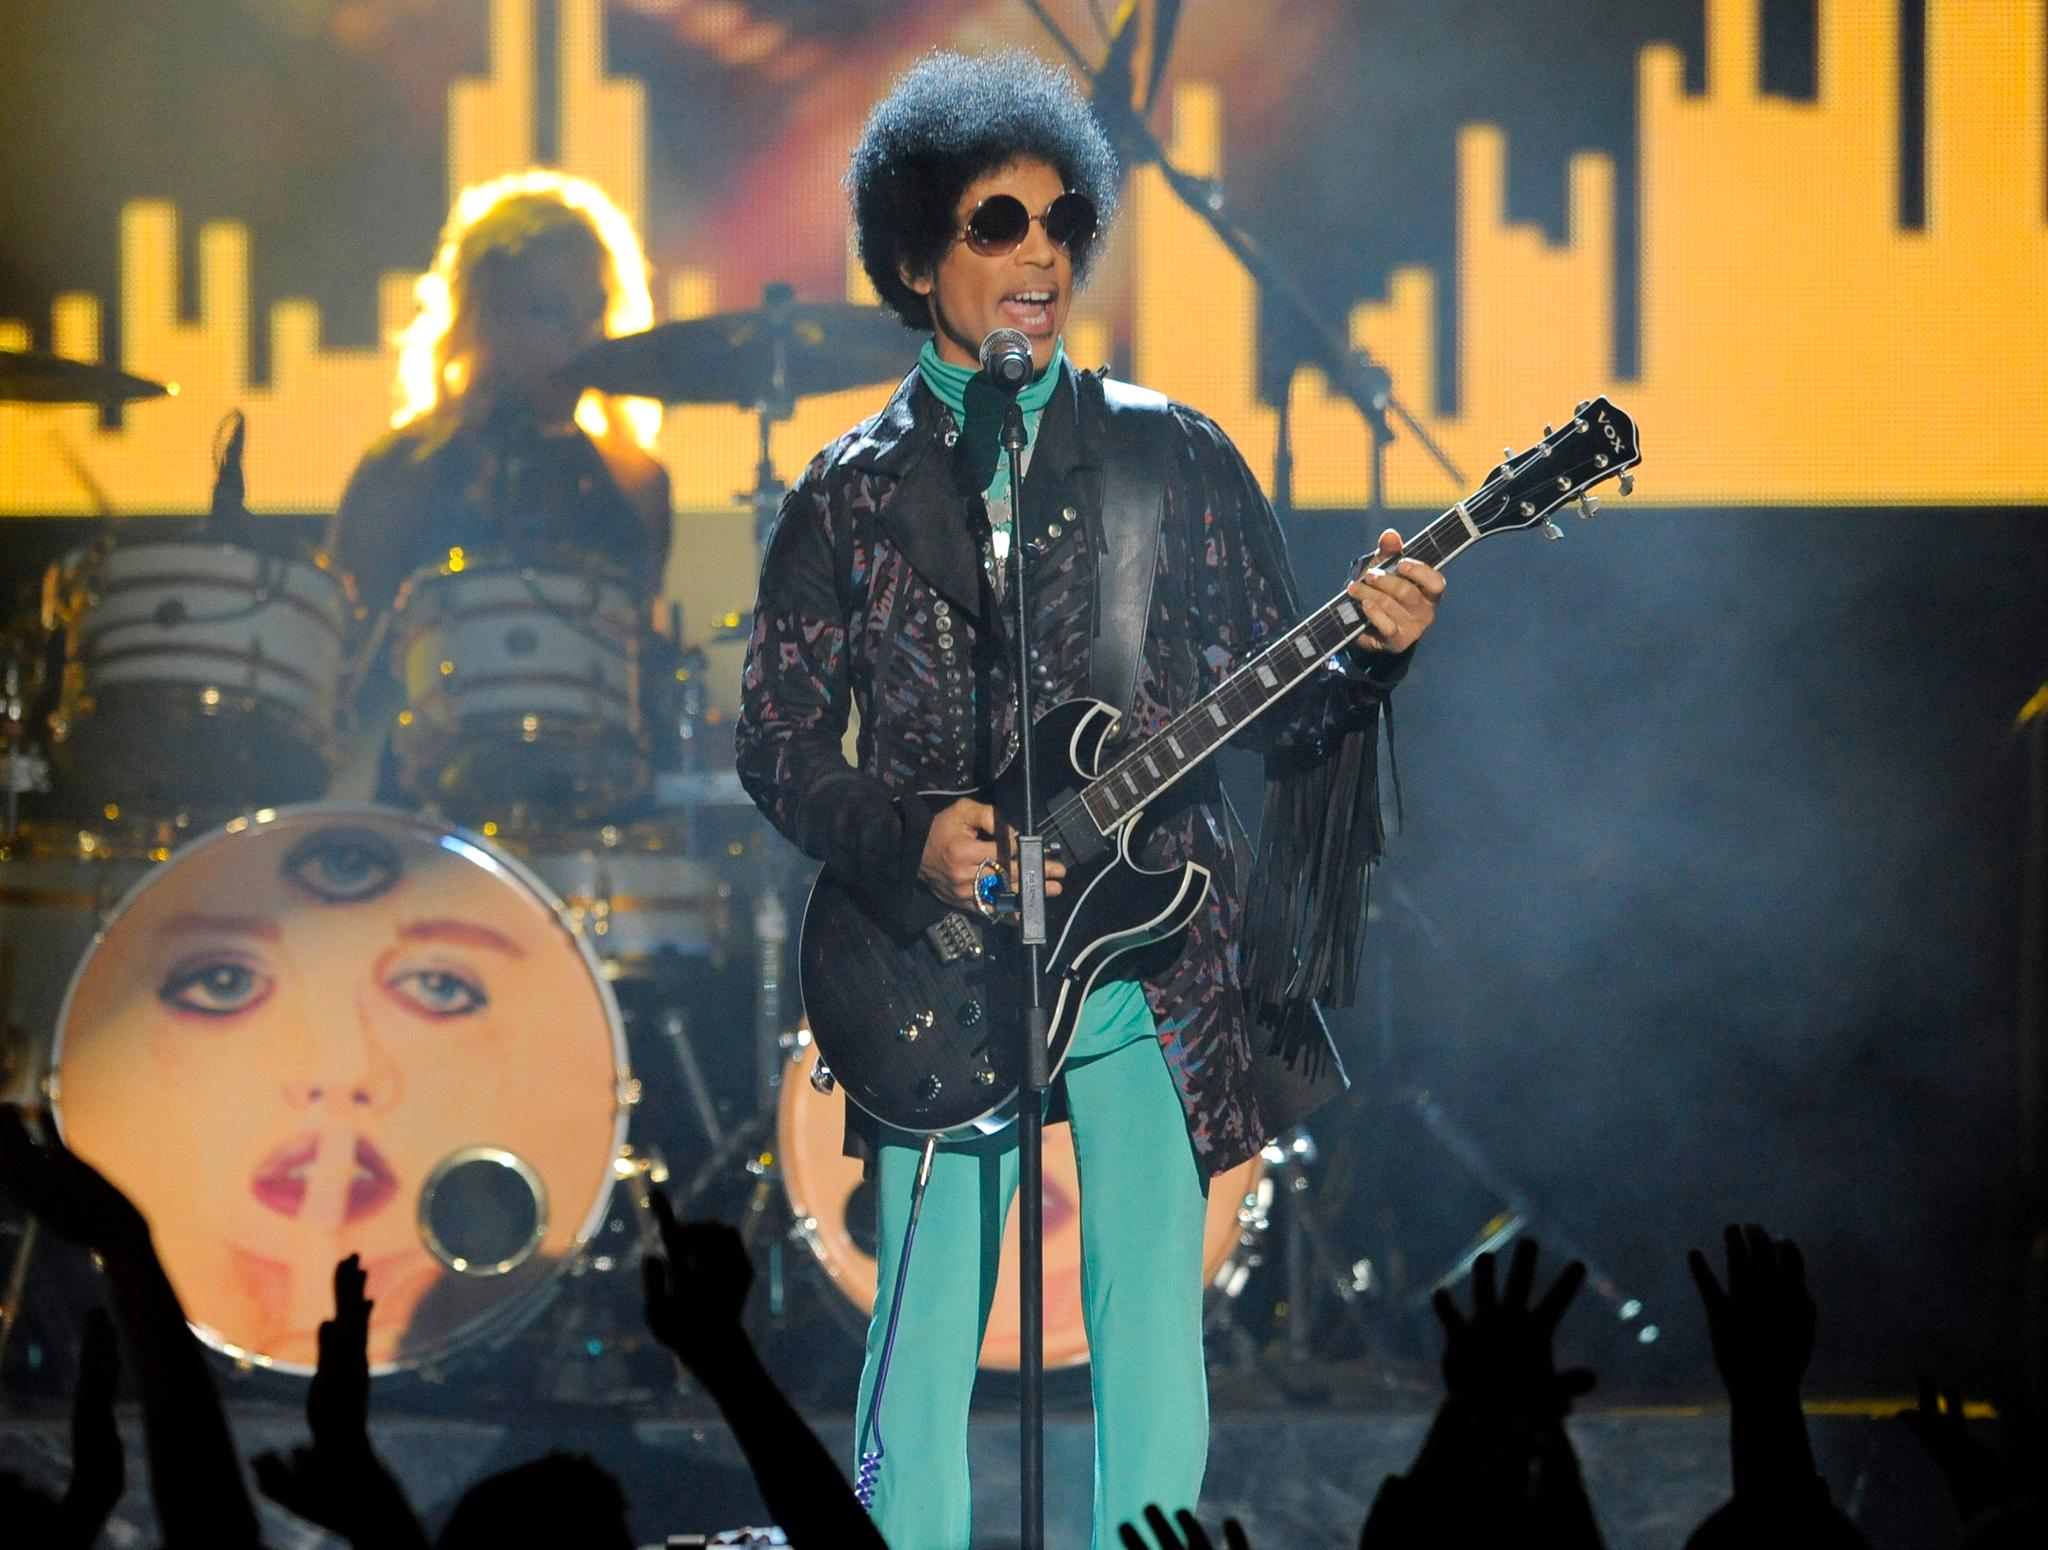 Artisten Prince er blant amerikanerne som døde av en fentanyloverdose i 2016